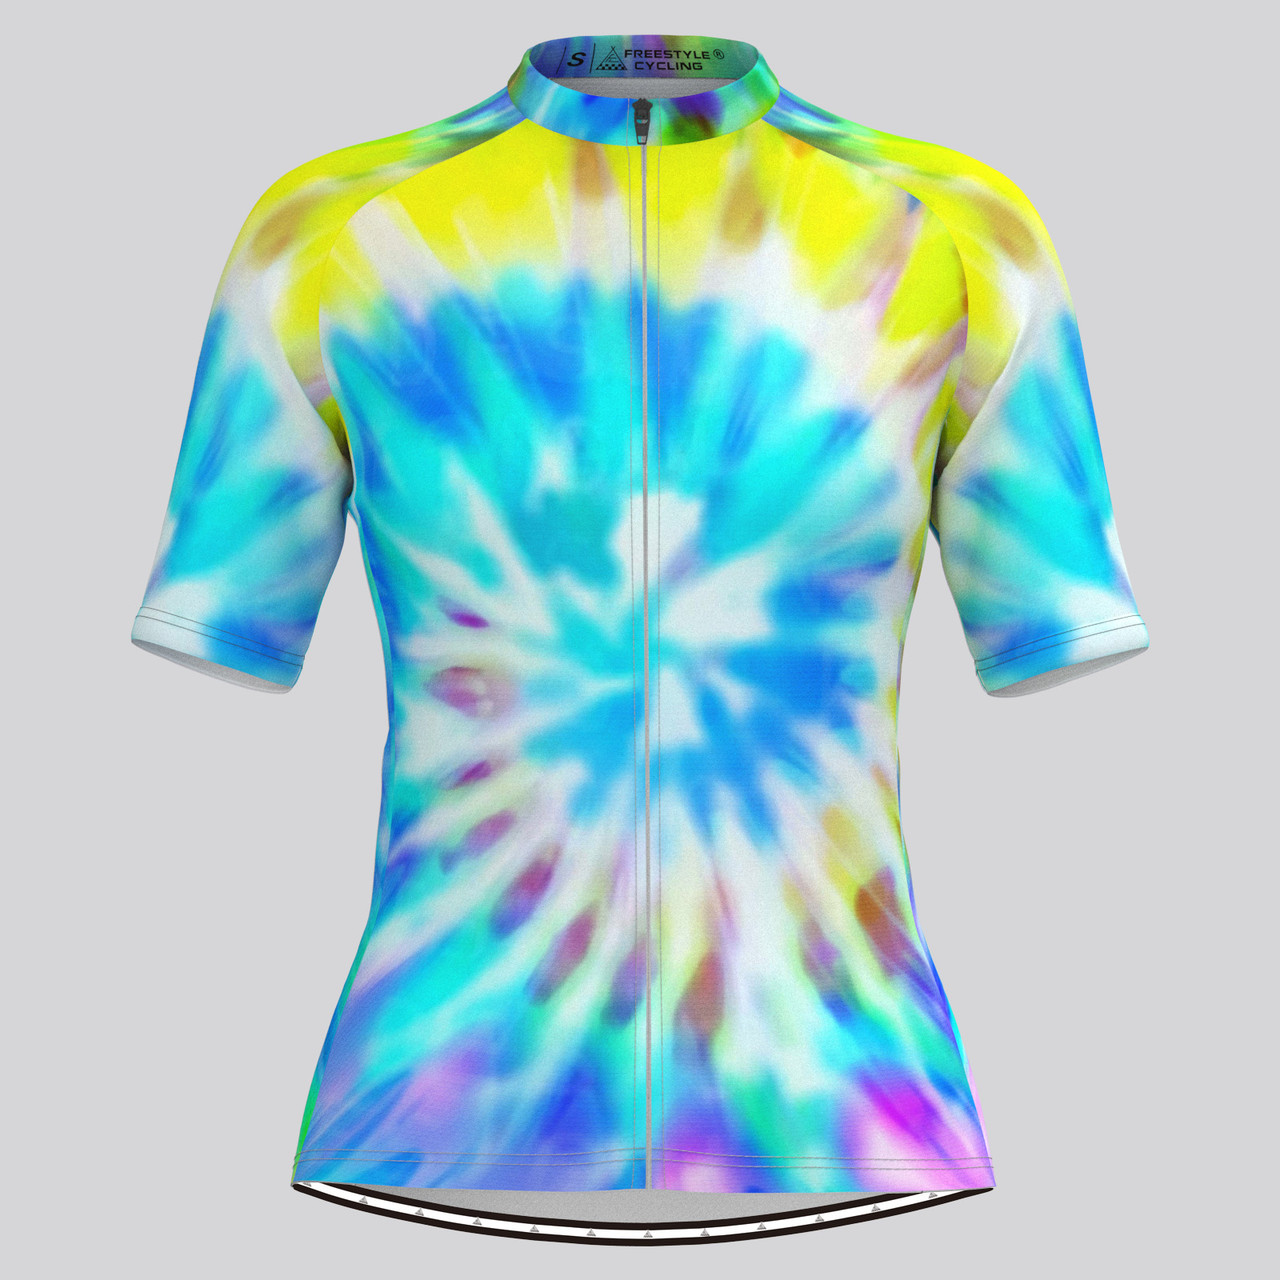 Tie Dye Novelty Women's Cycling Jersey - Pastel